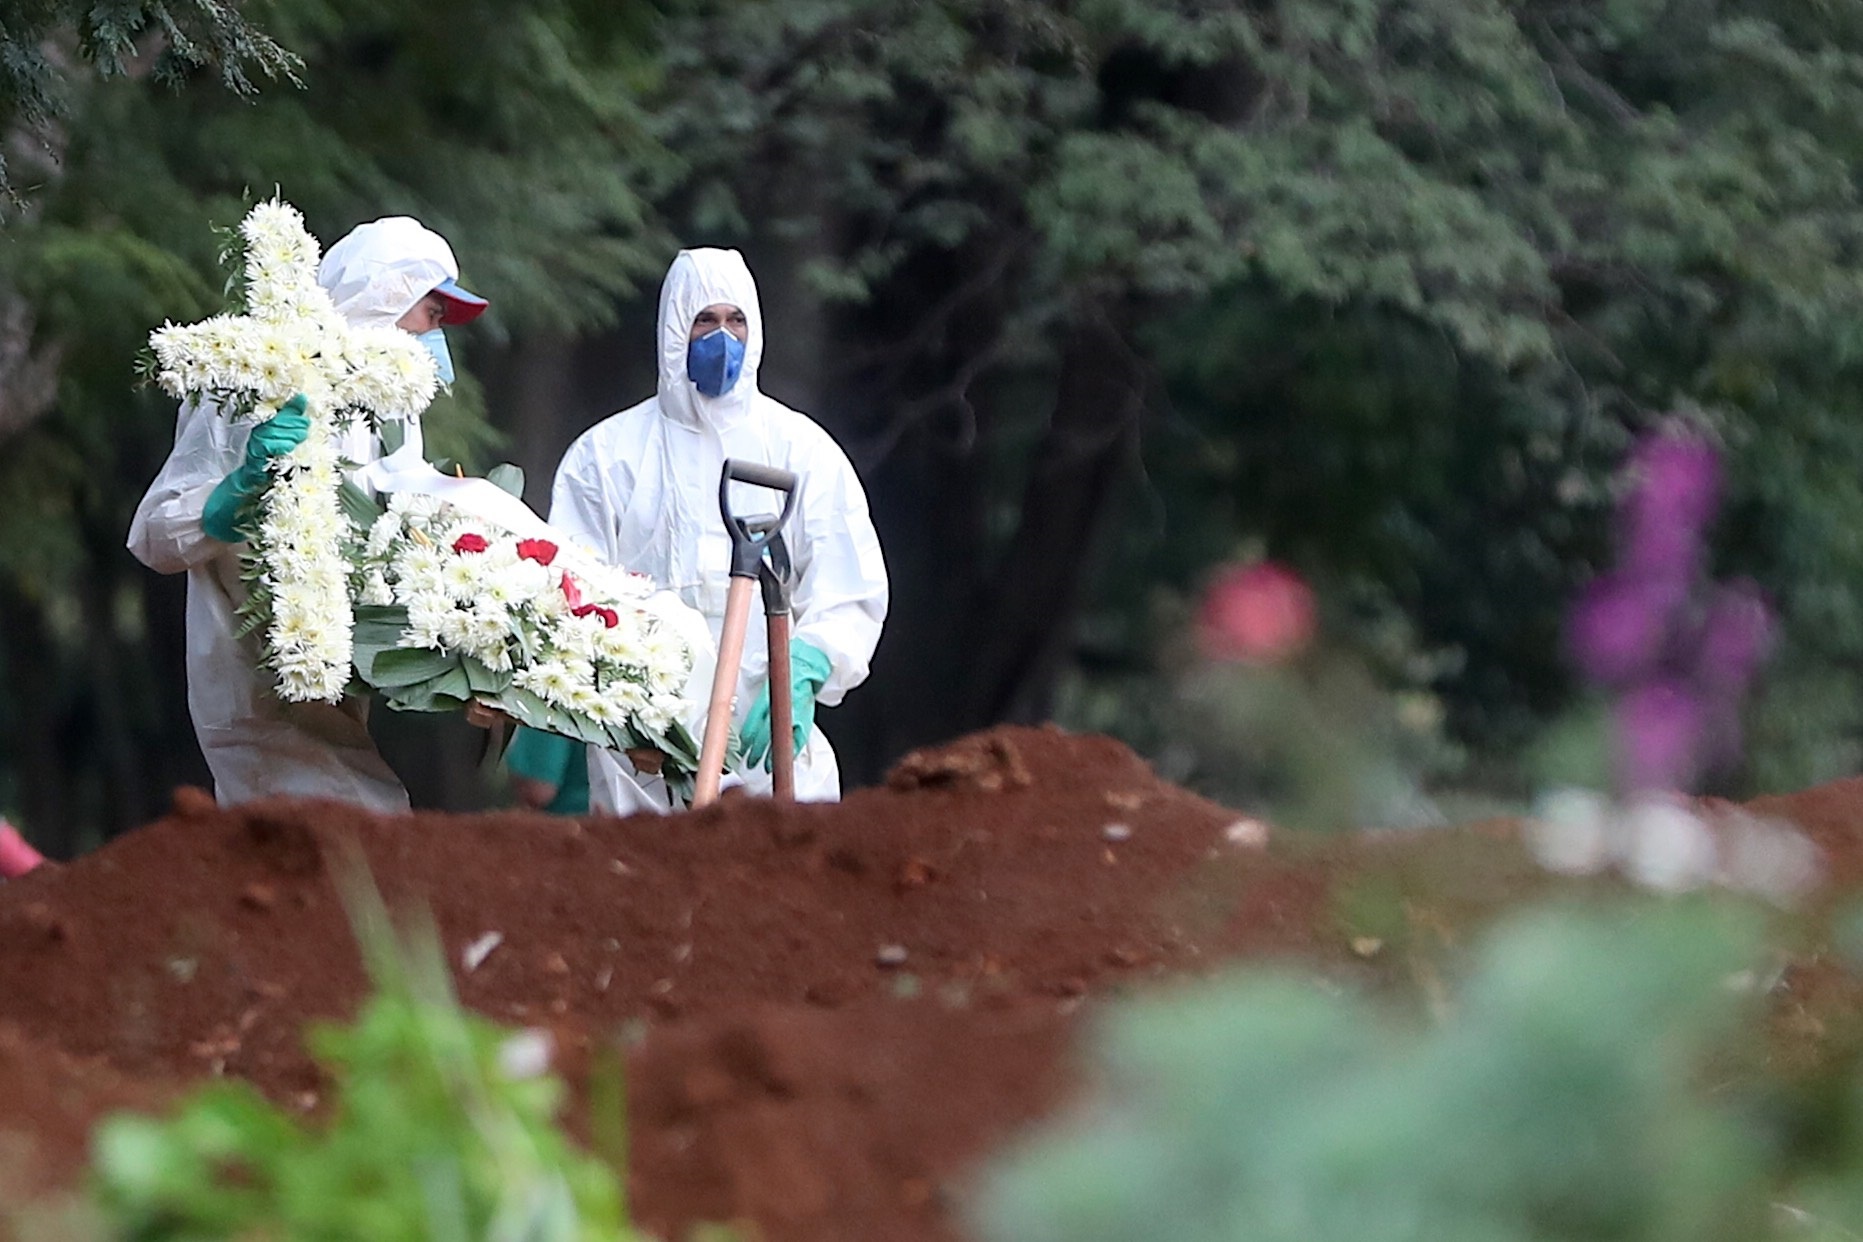 Empleados del servicio funerario entierran a una víctima de COVID-19 en el cementerio de Vila Formosa, situado en Sao Paulo, Brasil (EFE/Fernando Bizerra)
